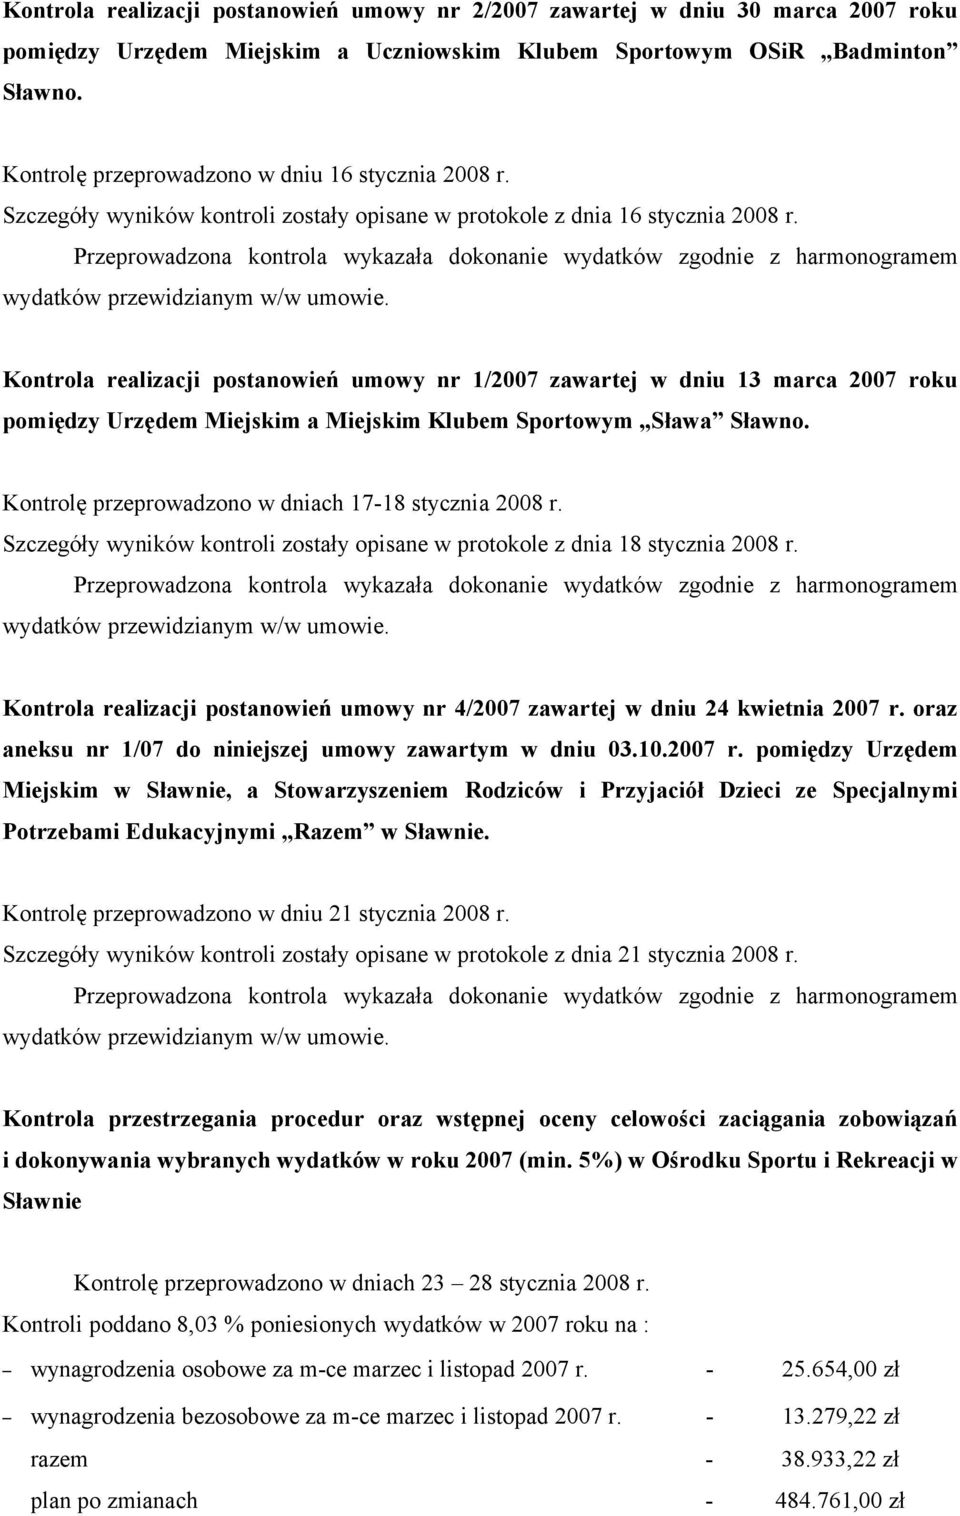 Kontrola realizacji postanowień umowy nr 1/2007 zawartej w dniu 13 marca 2007 roku pomiędzy Urzędem Miejskim a Miejskim Klubem Sportowym Sława Sławno.